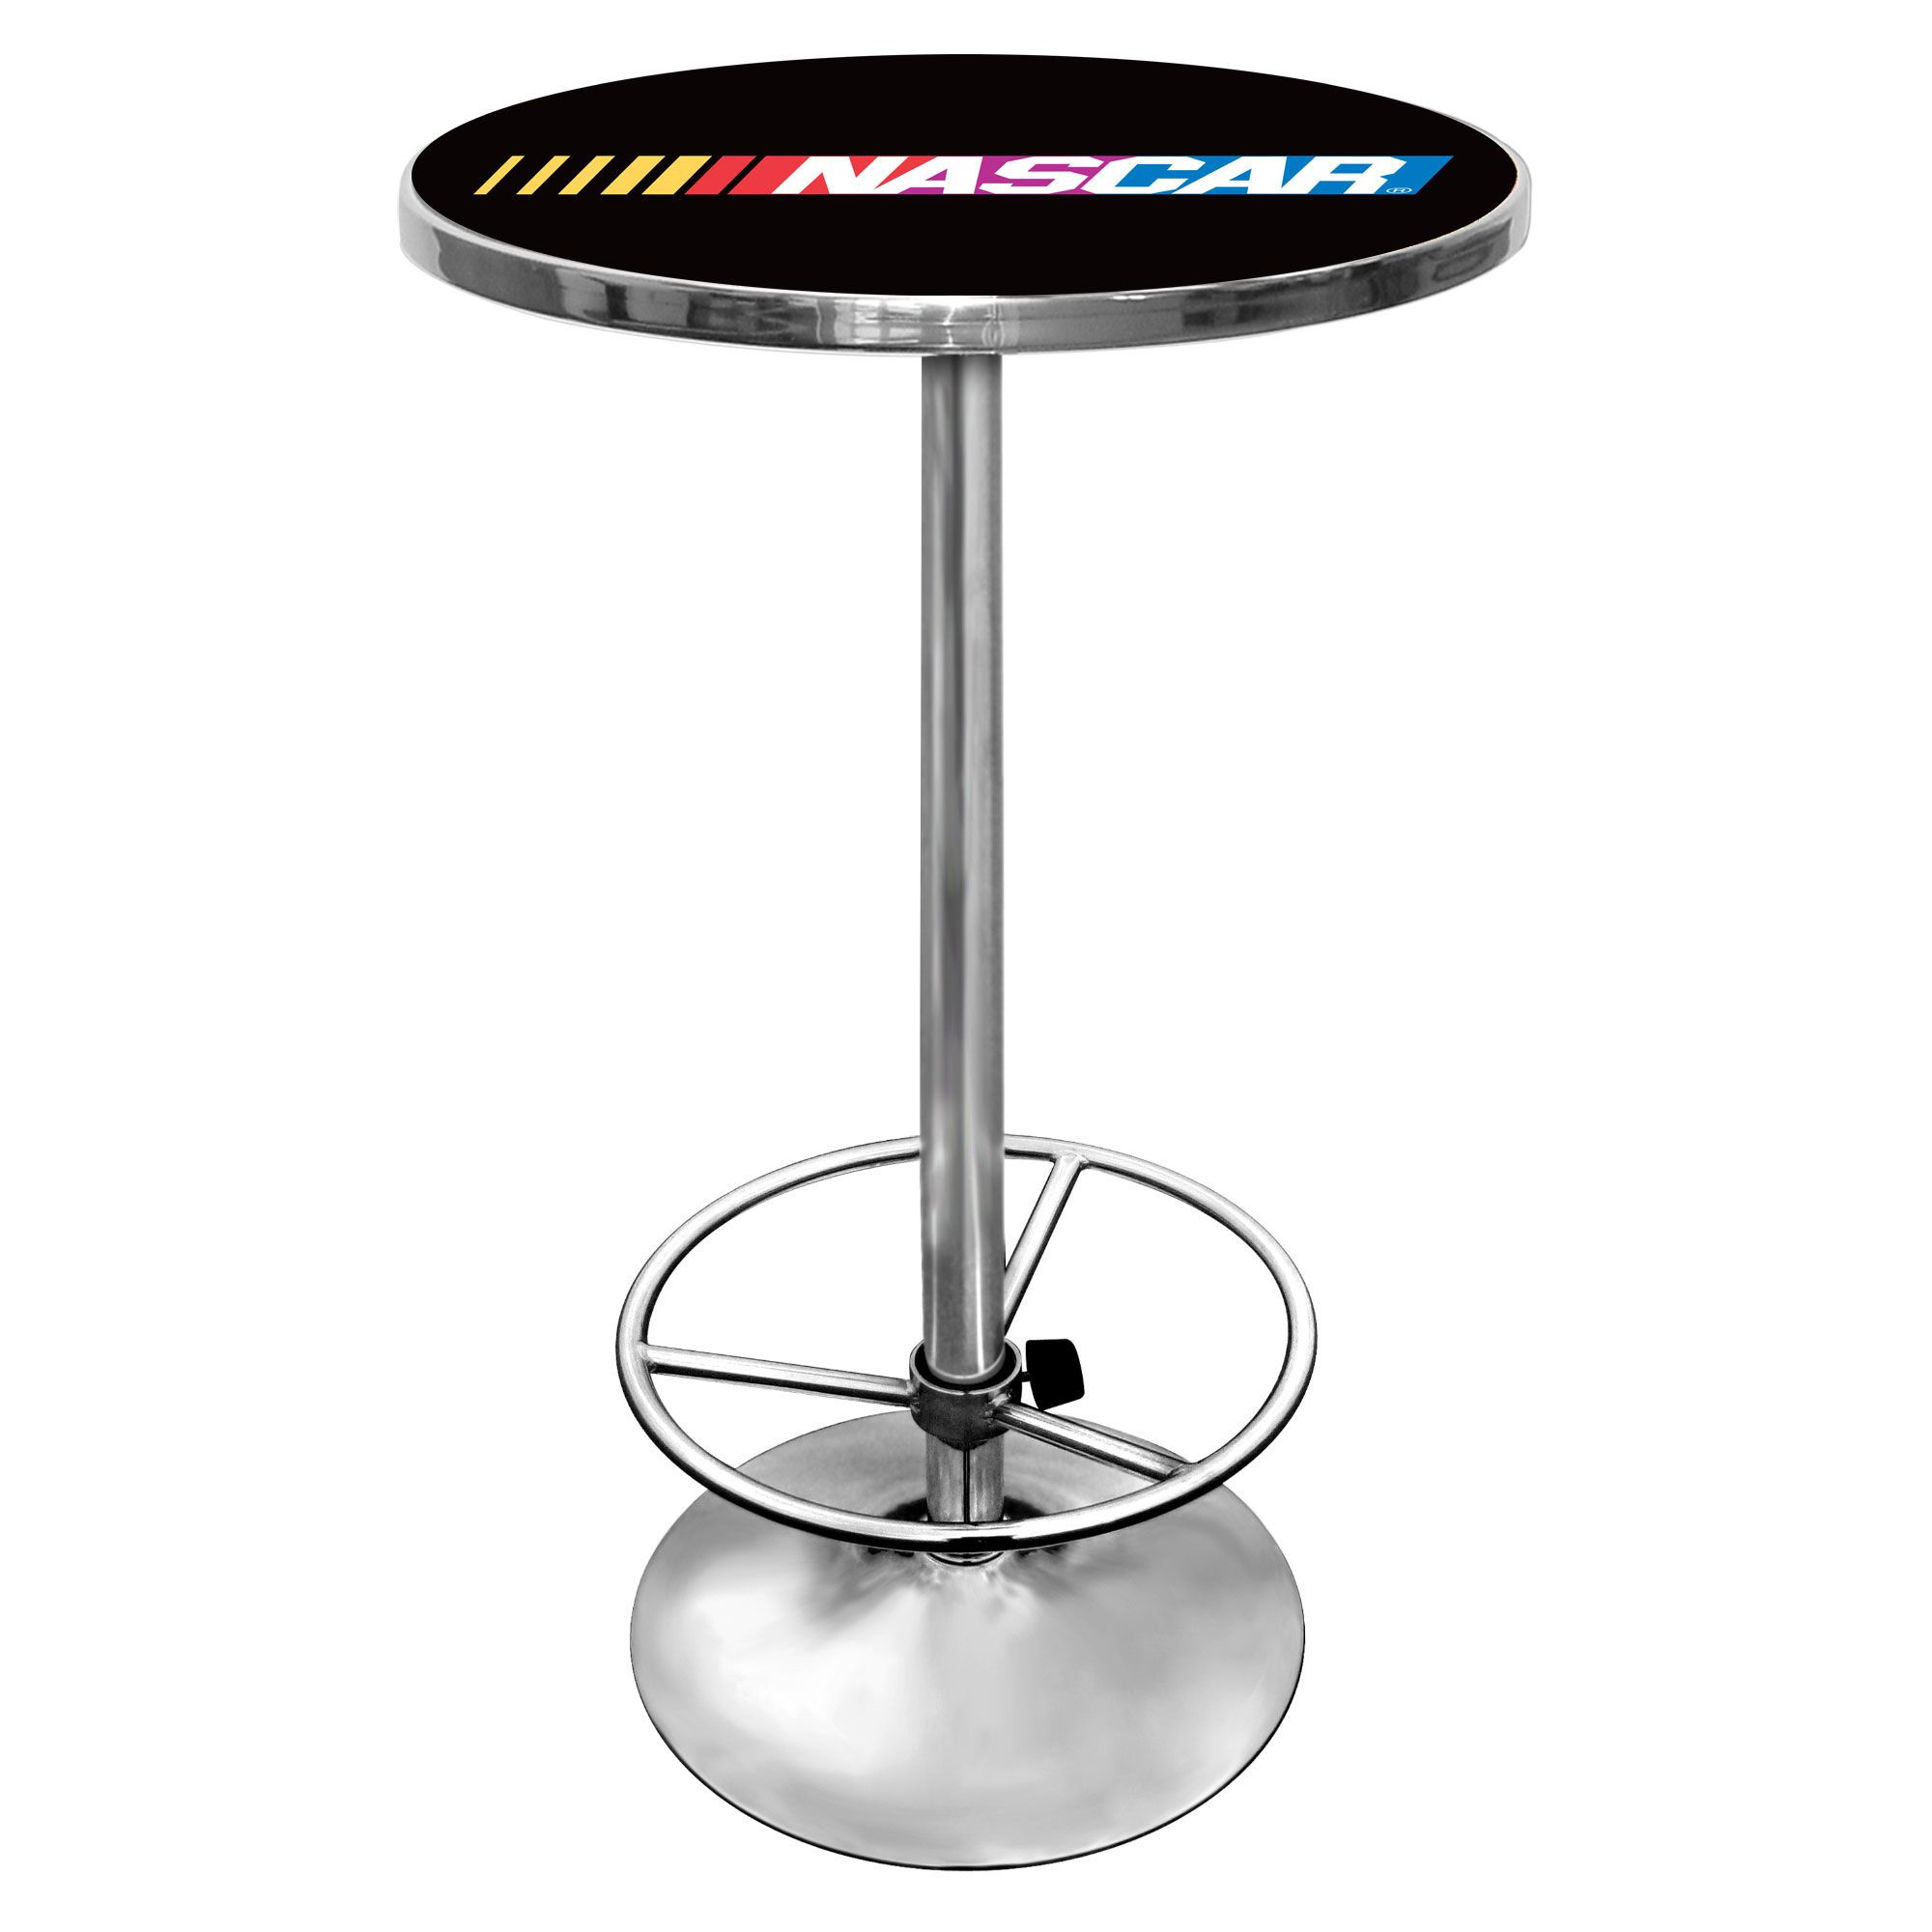 NASCAR Chrome Pub Table